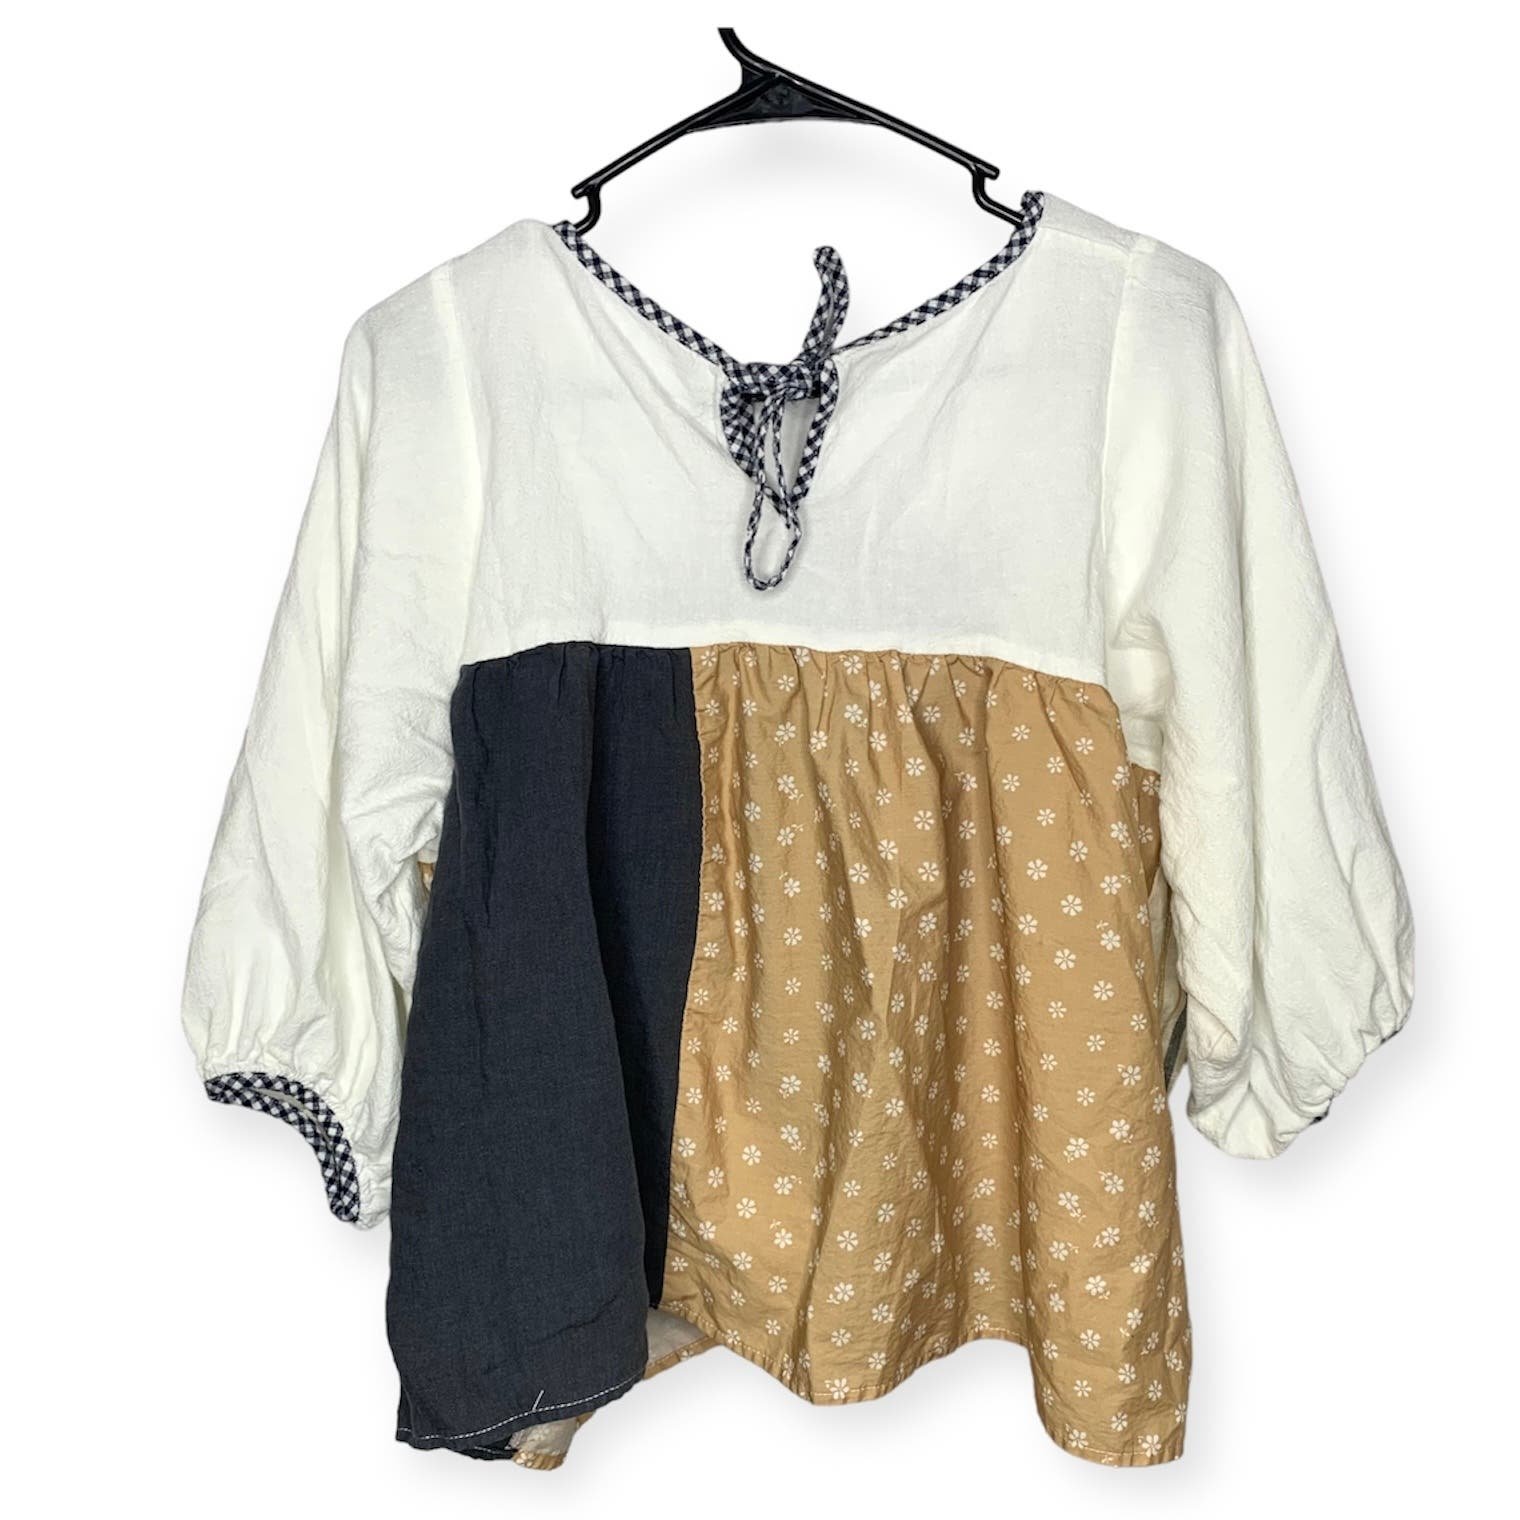 the Lowest price La Réunion patchwork cotton linen mix fabric peasant blouse women´s approx sz M K5SjnYNpG Online Exclusive